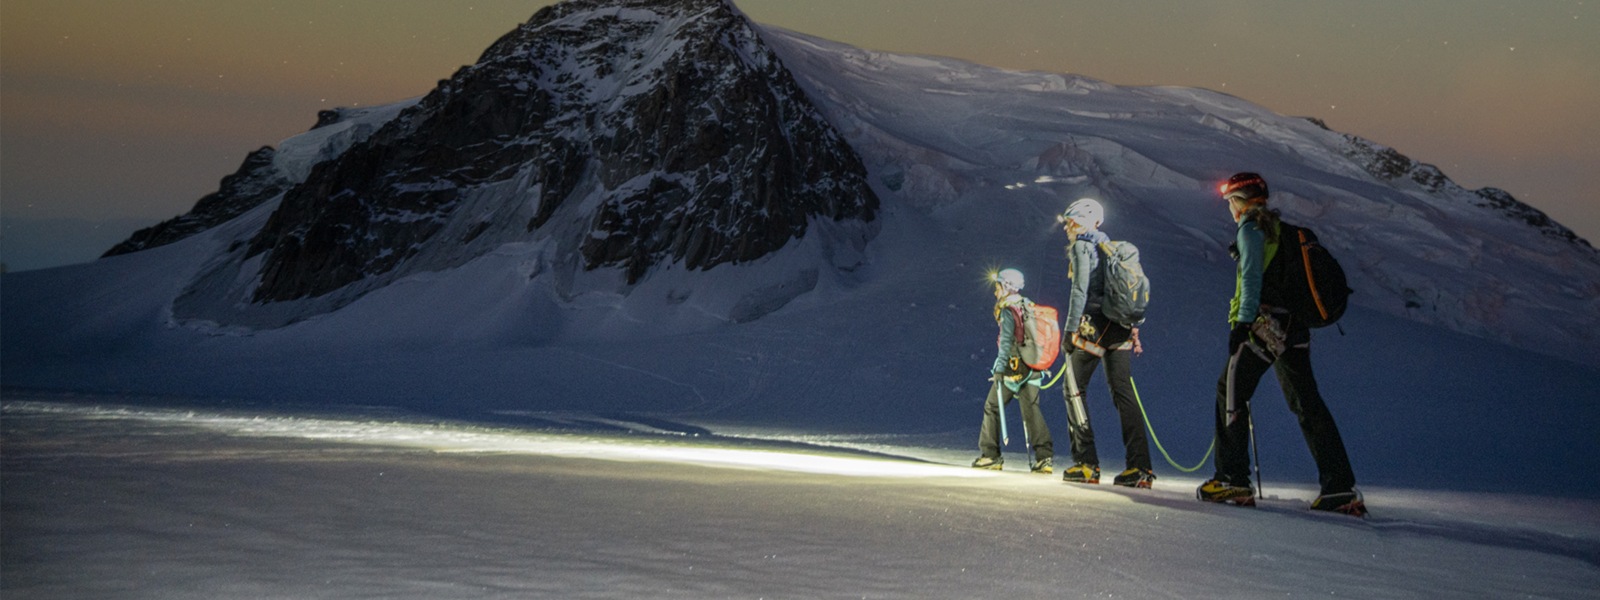 Drei Wanderer überqueren in den Bergen ein Schneefeld unter freiem Sternenhimmel.